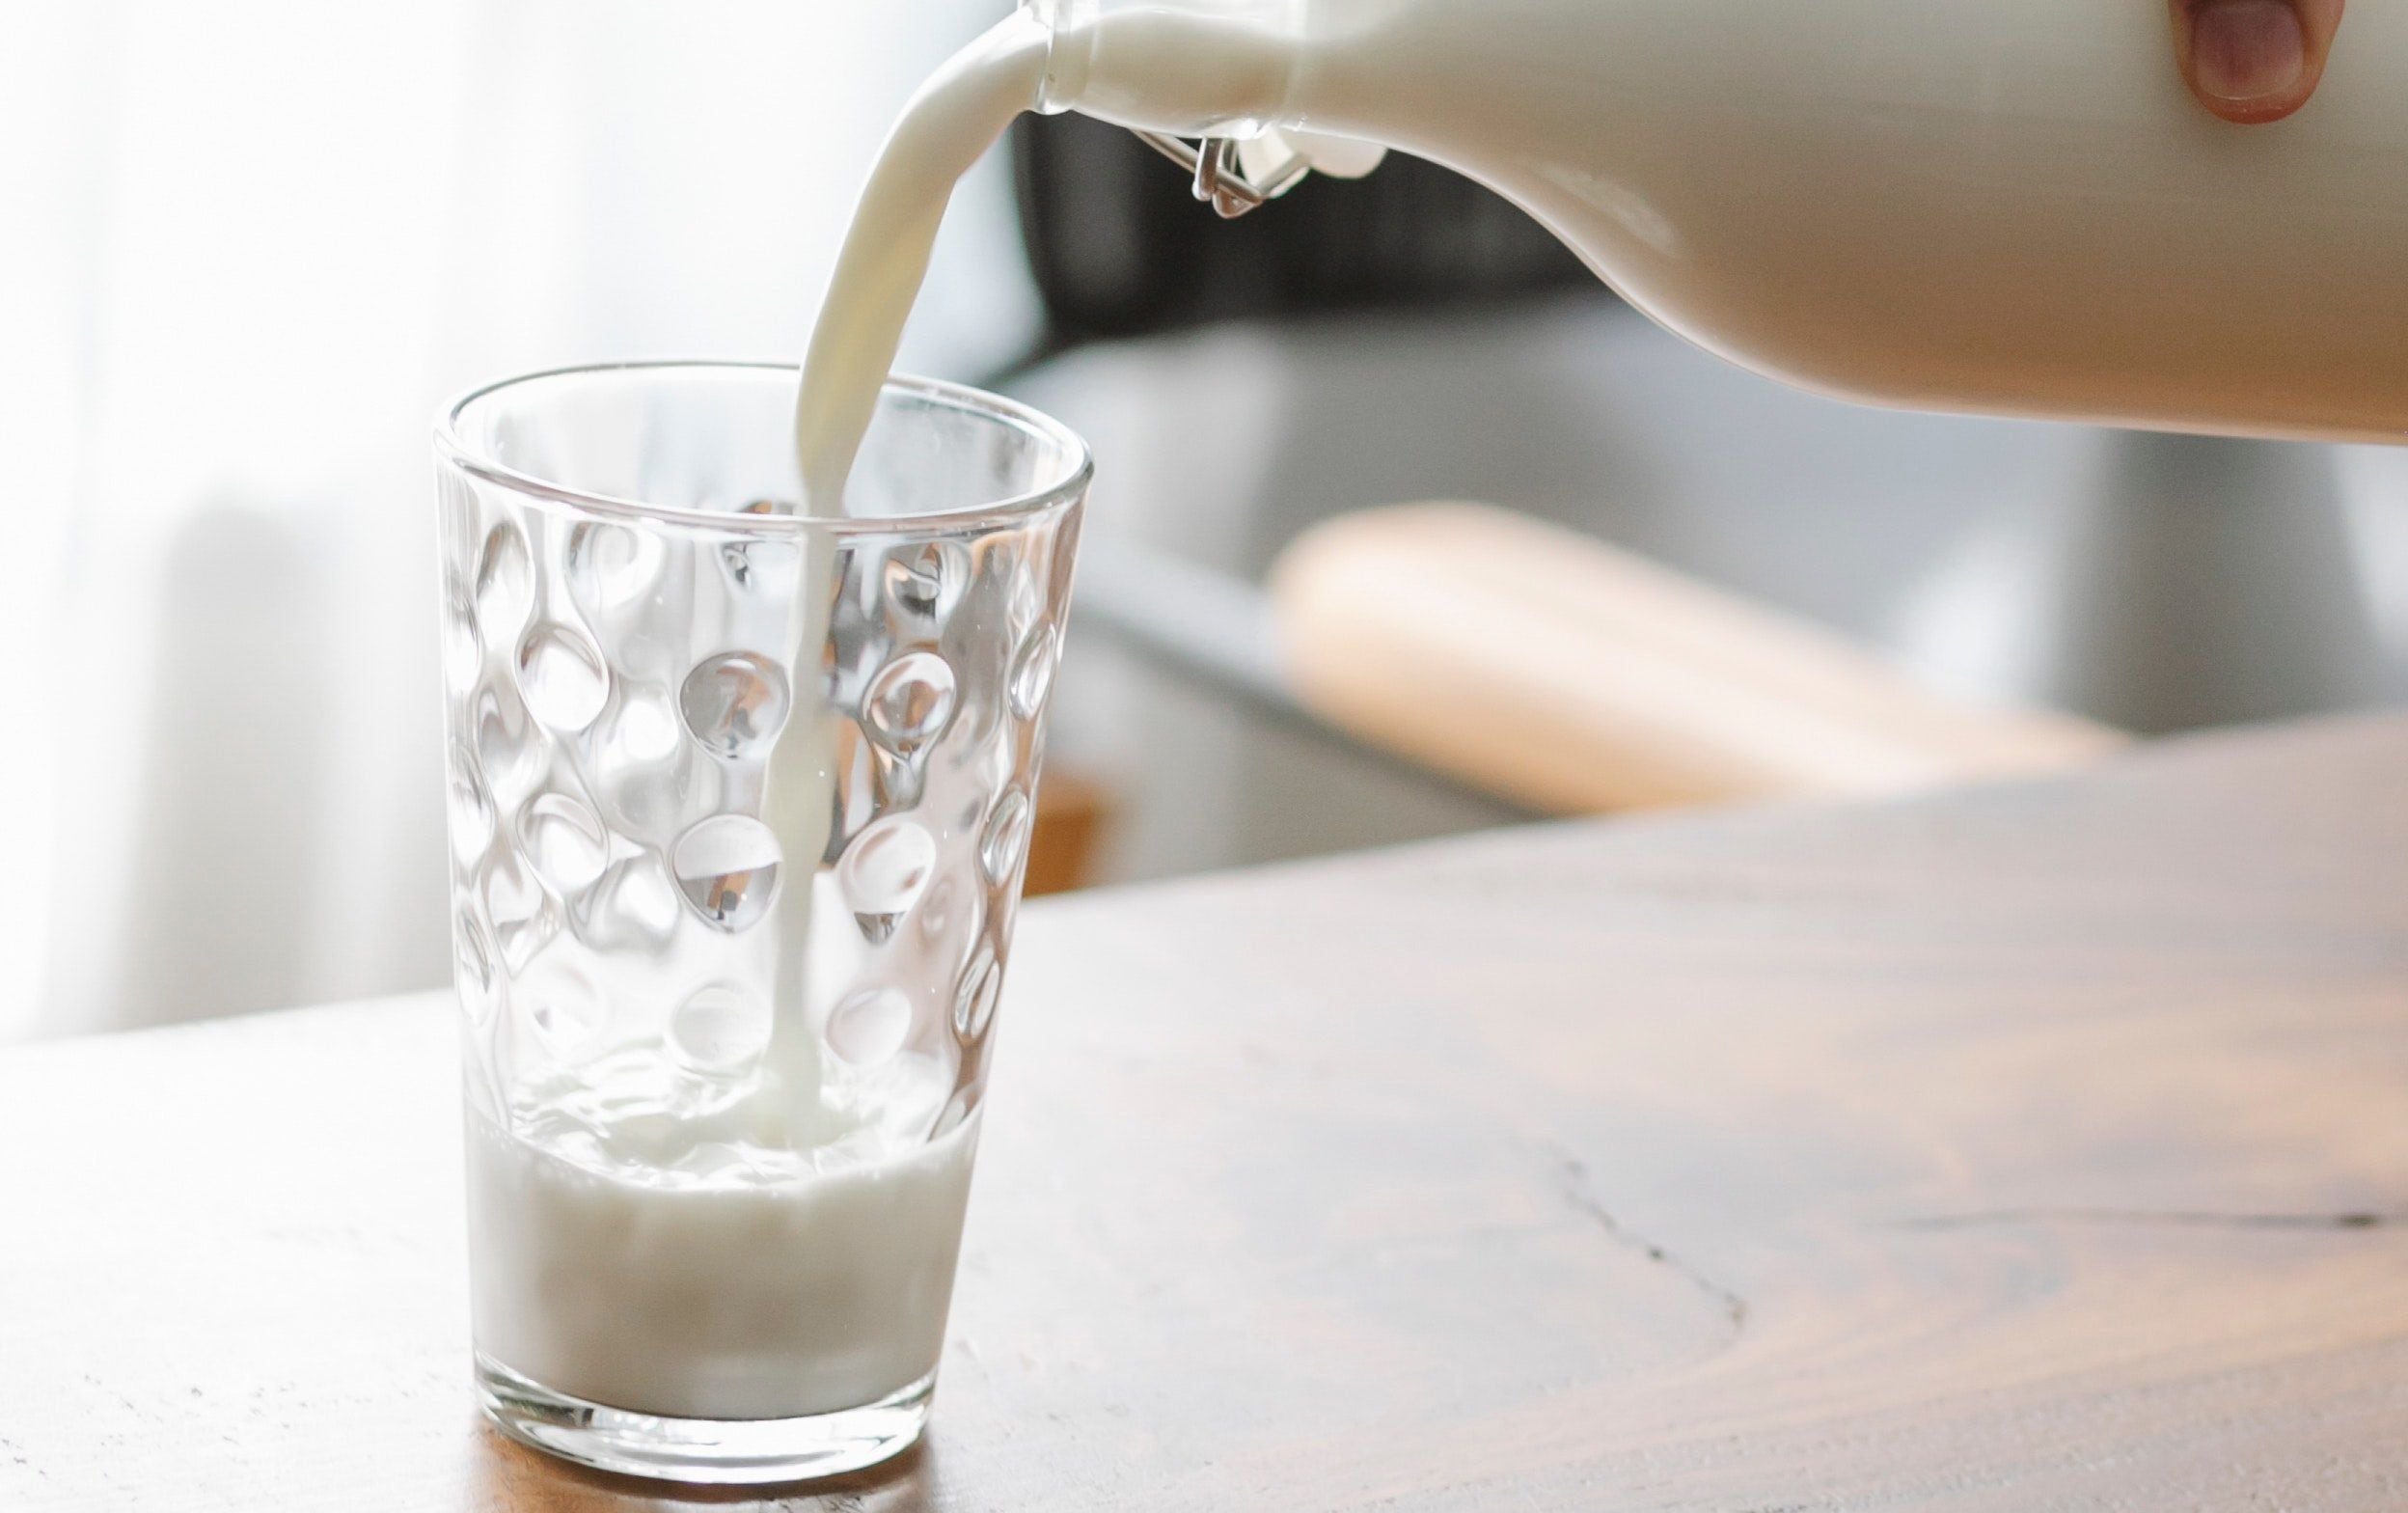 “Otra gran ventaja de los lácteos es el contenido de calcio, no por la cantidad, sino porque es el calcio que el cuerpo mejor absorbe y es fuente de vitamina D, escaso en los alimentos”, explica la experta en nutrición. (Foto: Pexel)